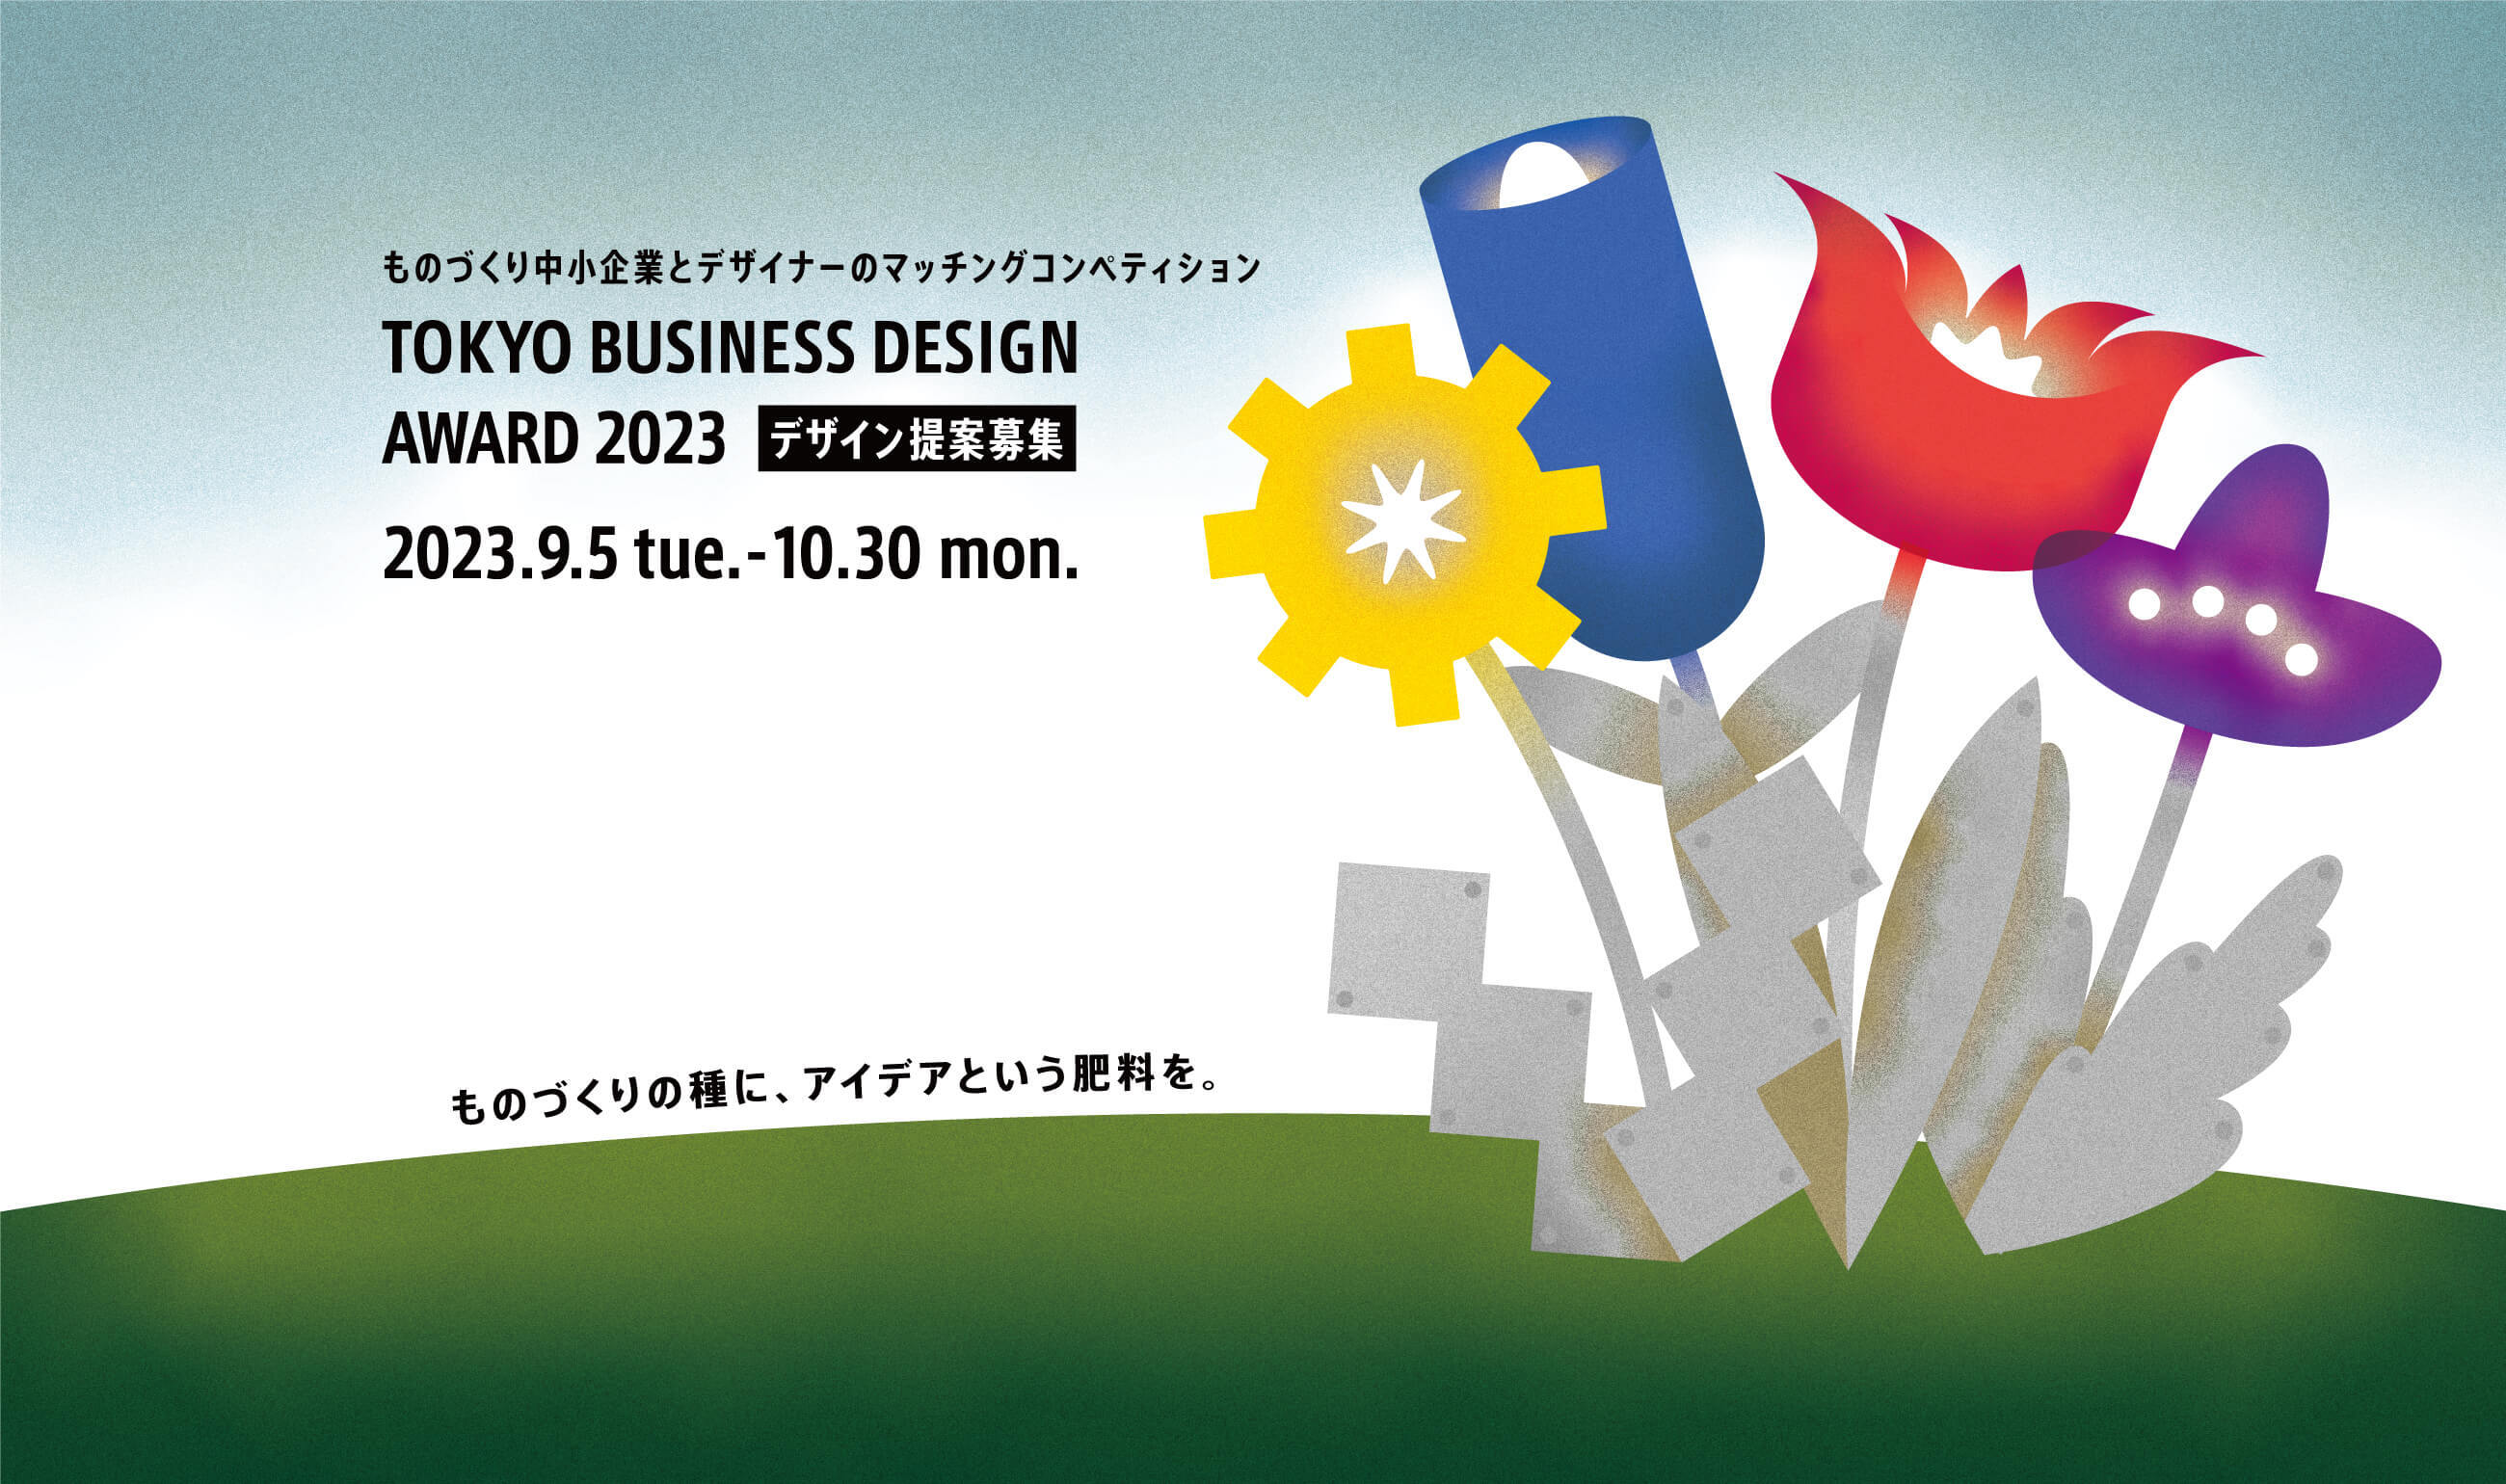 「東京ビジネスデザインアワード」が企業テーマ11件を発表し、提案応募の受け付けを開始